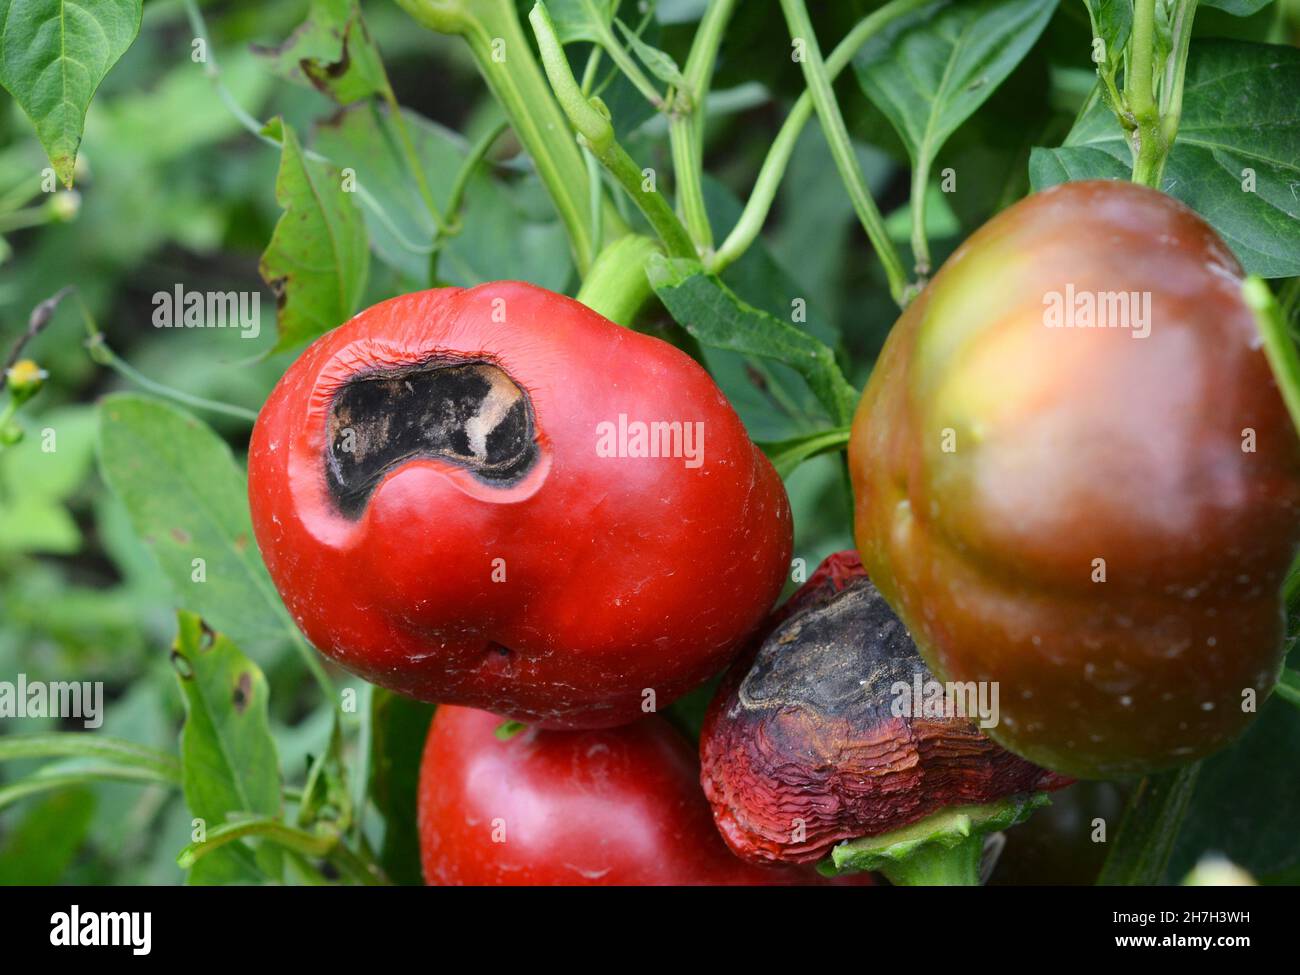 Anthracnose maladie du poivron.Un gros plan de fruits mûrs au poivron rouge endommagé par la pourriture, symptôme de la maladie d'anthracnose. Banque D'Images